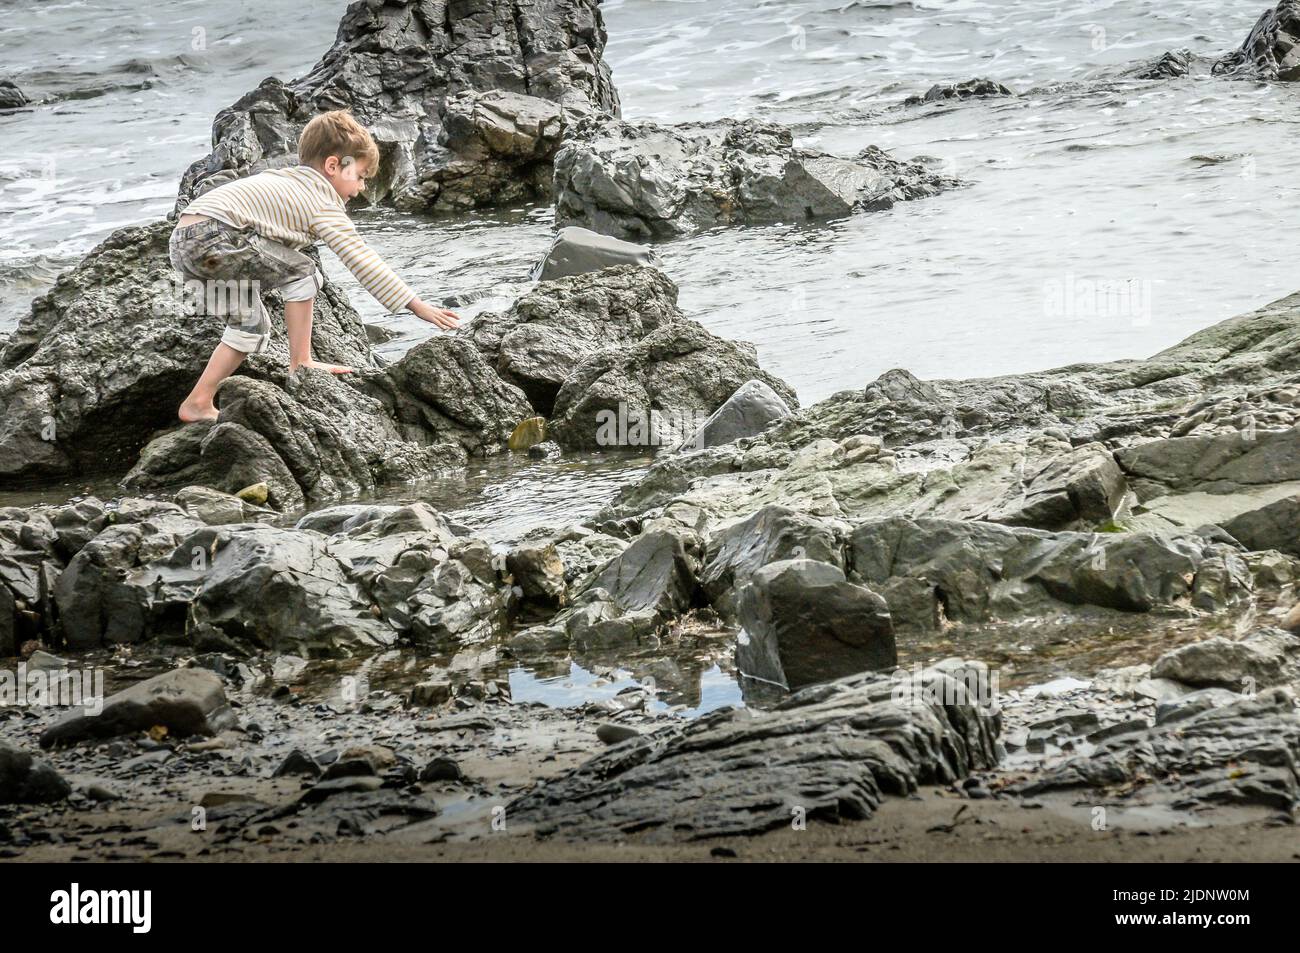 Un petit garçon a du plaisir à jouer sur les rochers. Les rochers, et l'eau font toujours un grand endroit de jeu. Mais atteignant loin tout en se tenant sur ces rochers glissants. Banque D'Images